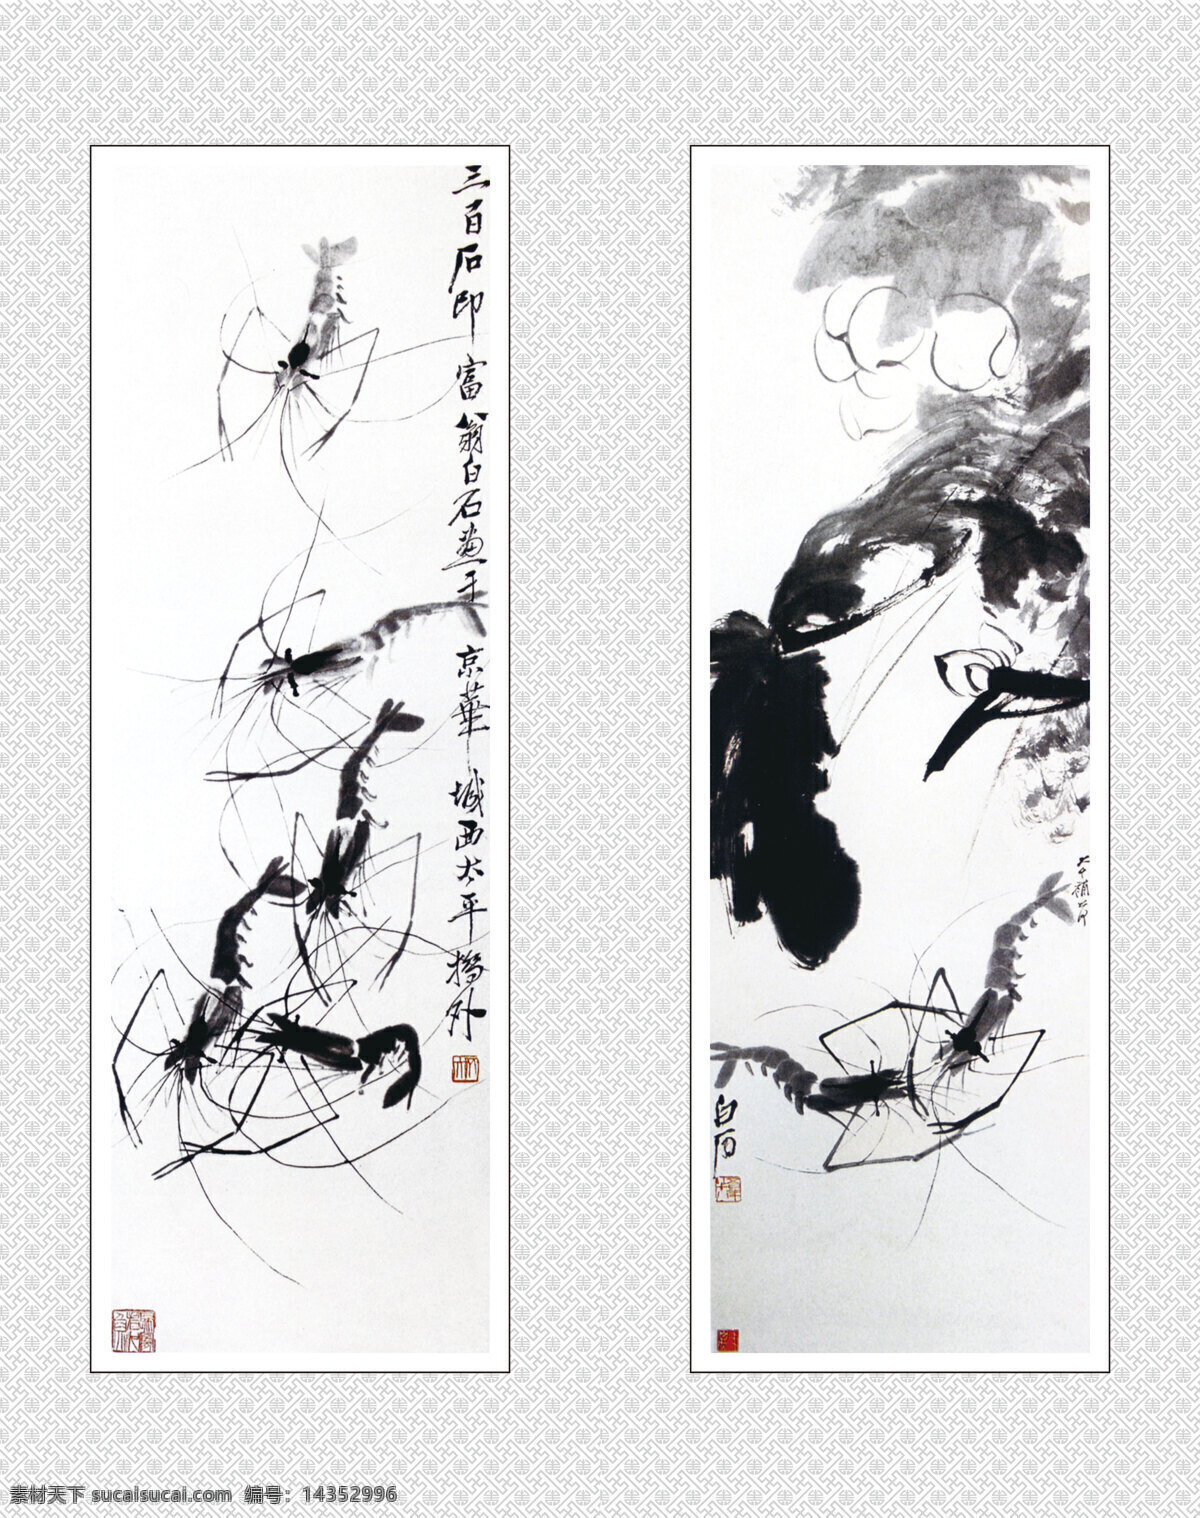 中国画 中国元素 绘画元素 书法 艺术 动物画 水墨画 中国风 淡彩画 移门图 齐白石 虾 画 绘画书法 文化艺术